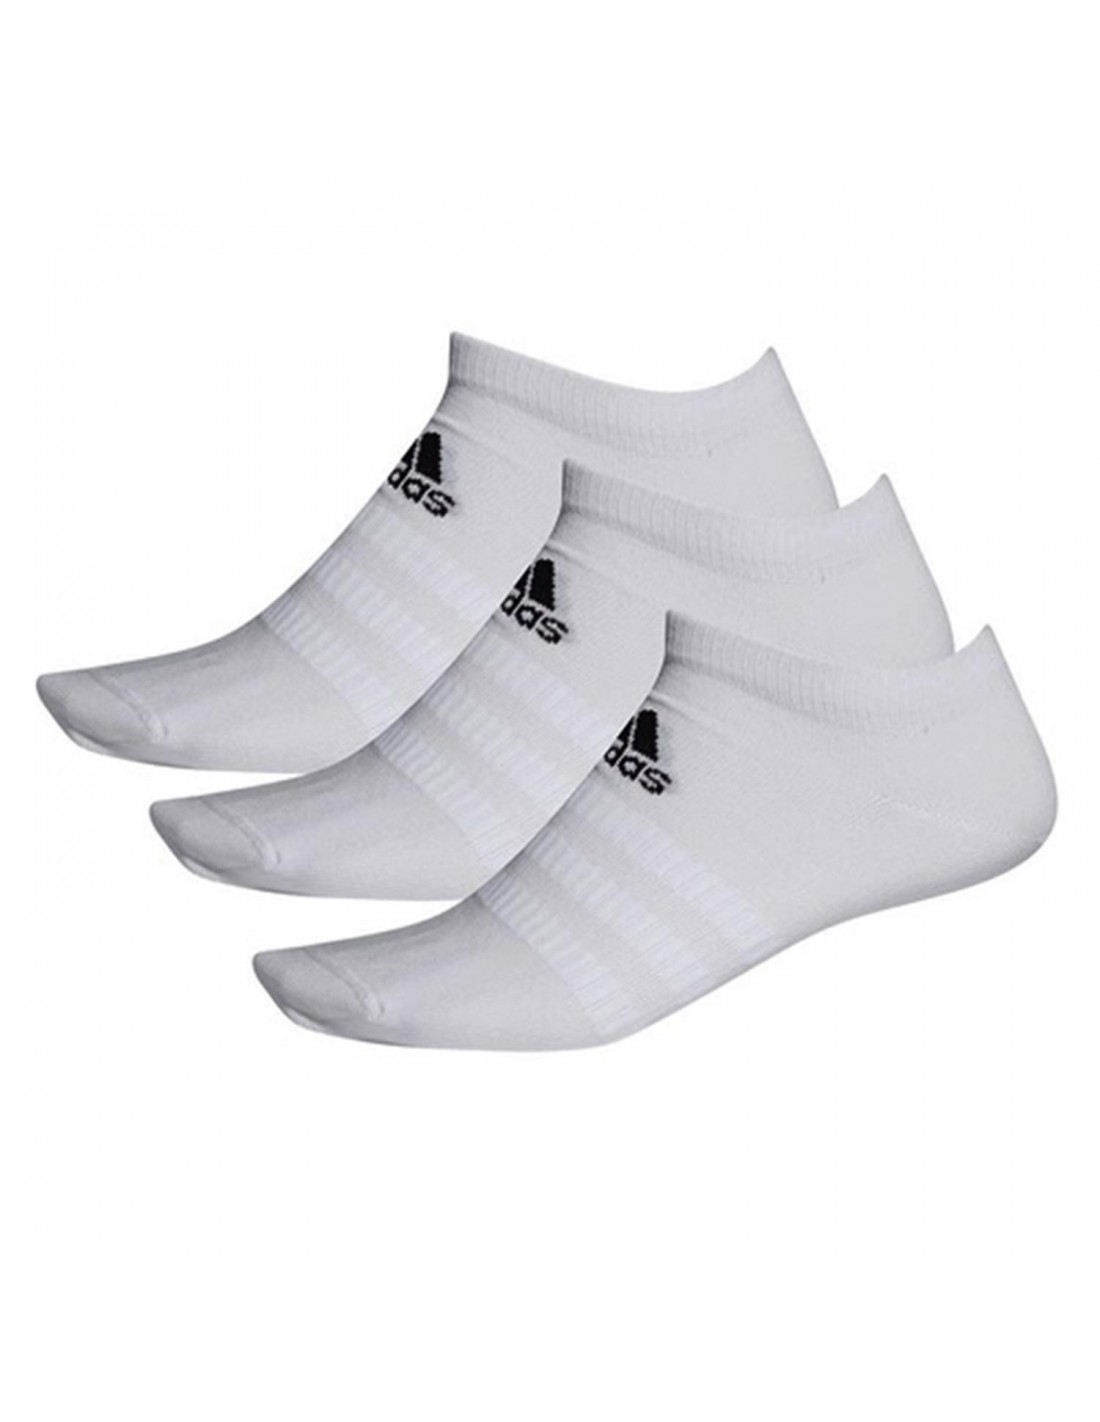 Calcetines blancos tobilleros deporte Adidas Color BLANCO Talla 28-30